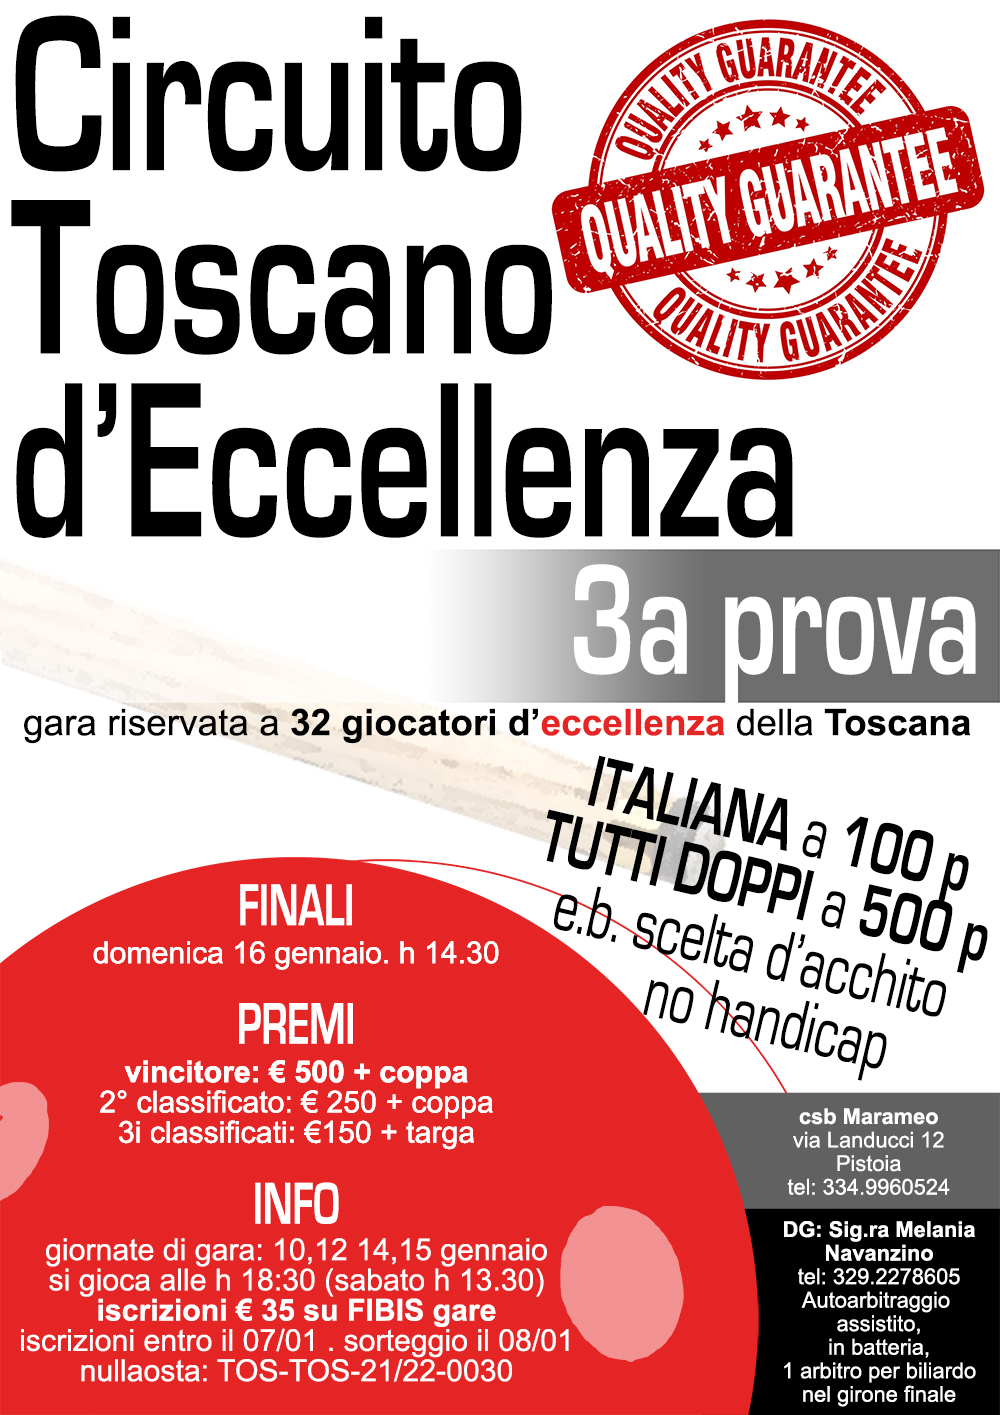 Circuito Toscano d'Eccellenza - 3° Prova